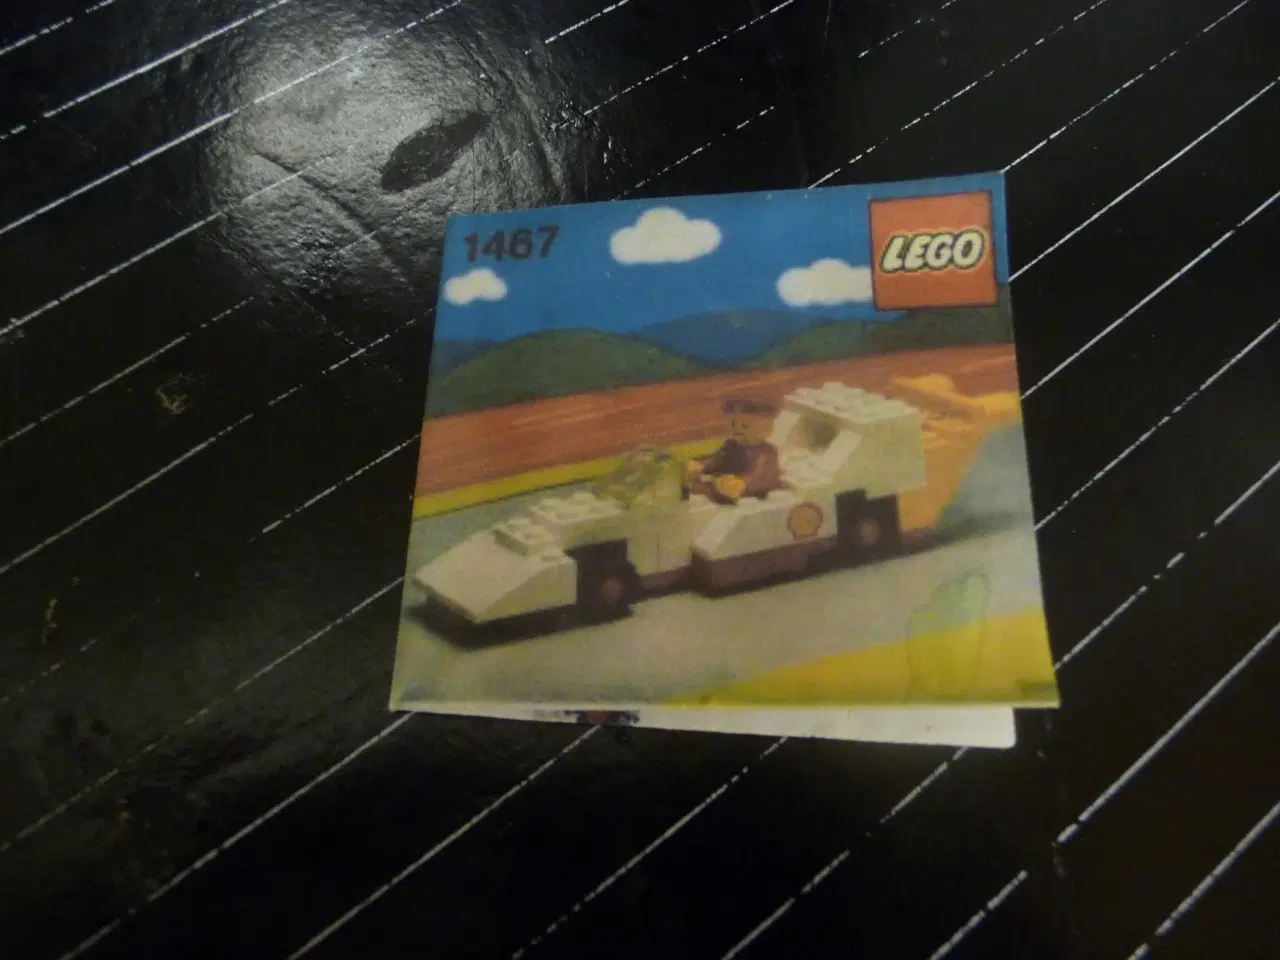 Billede 2 - lego shell bil 1467 og kopi af byggevejlening  